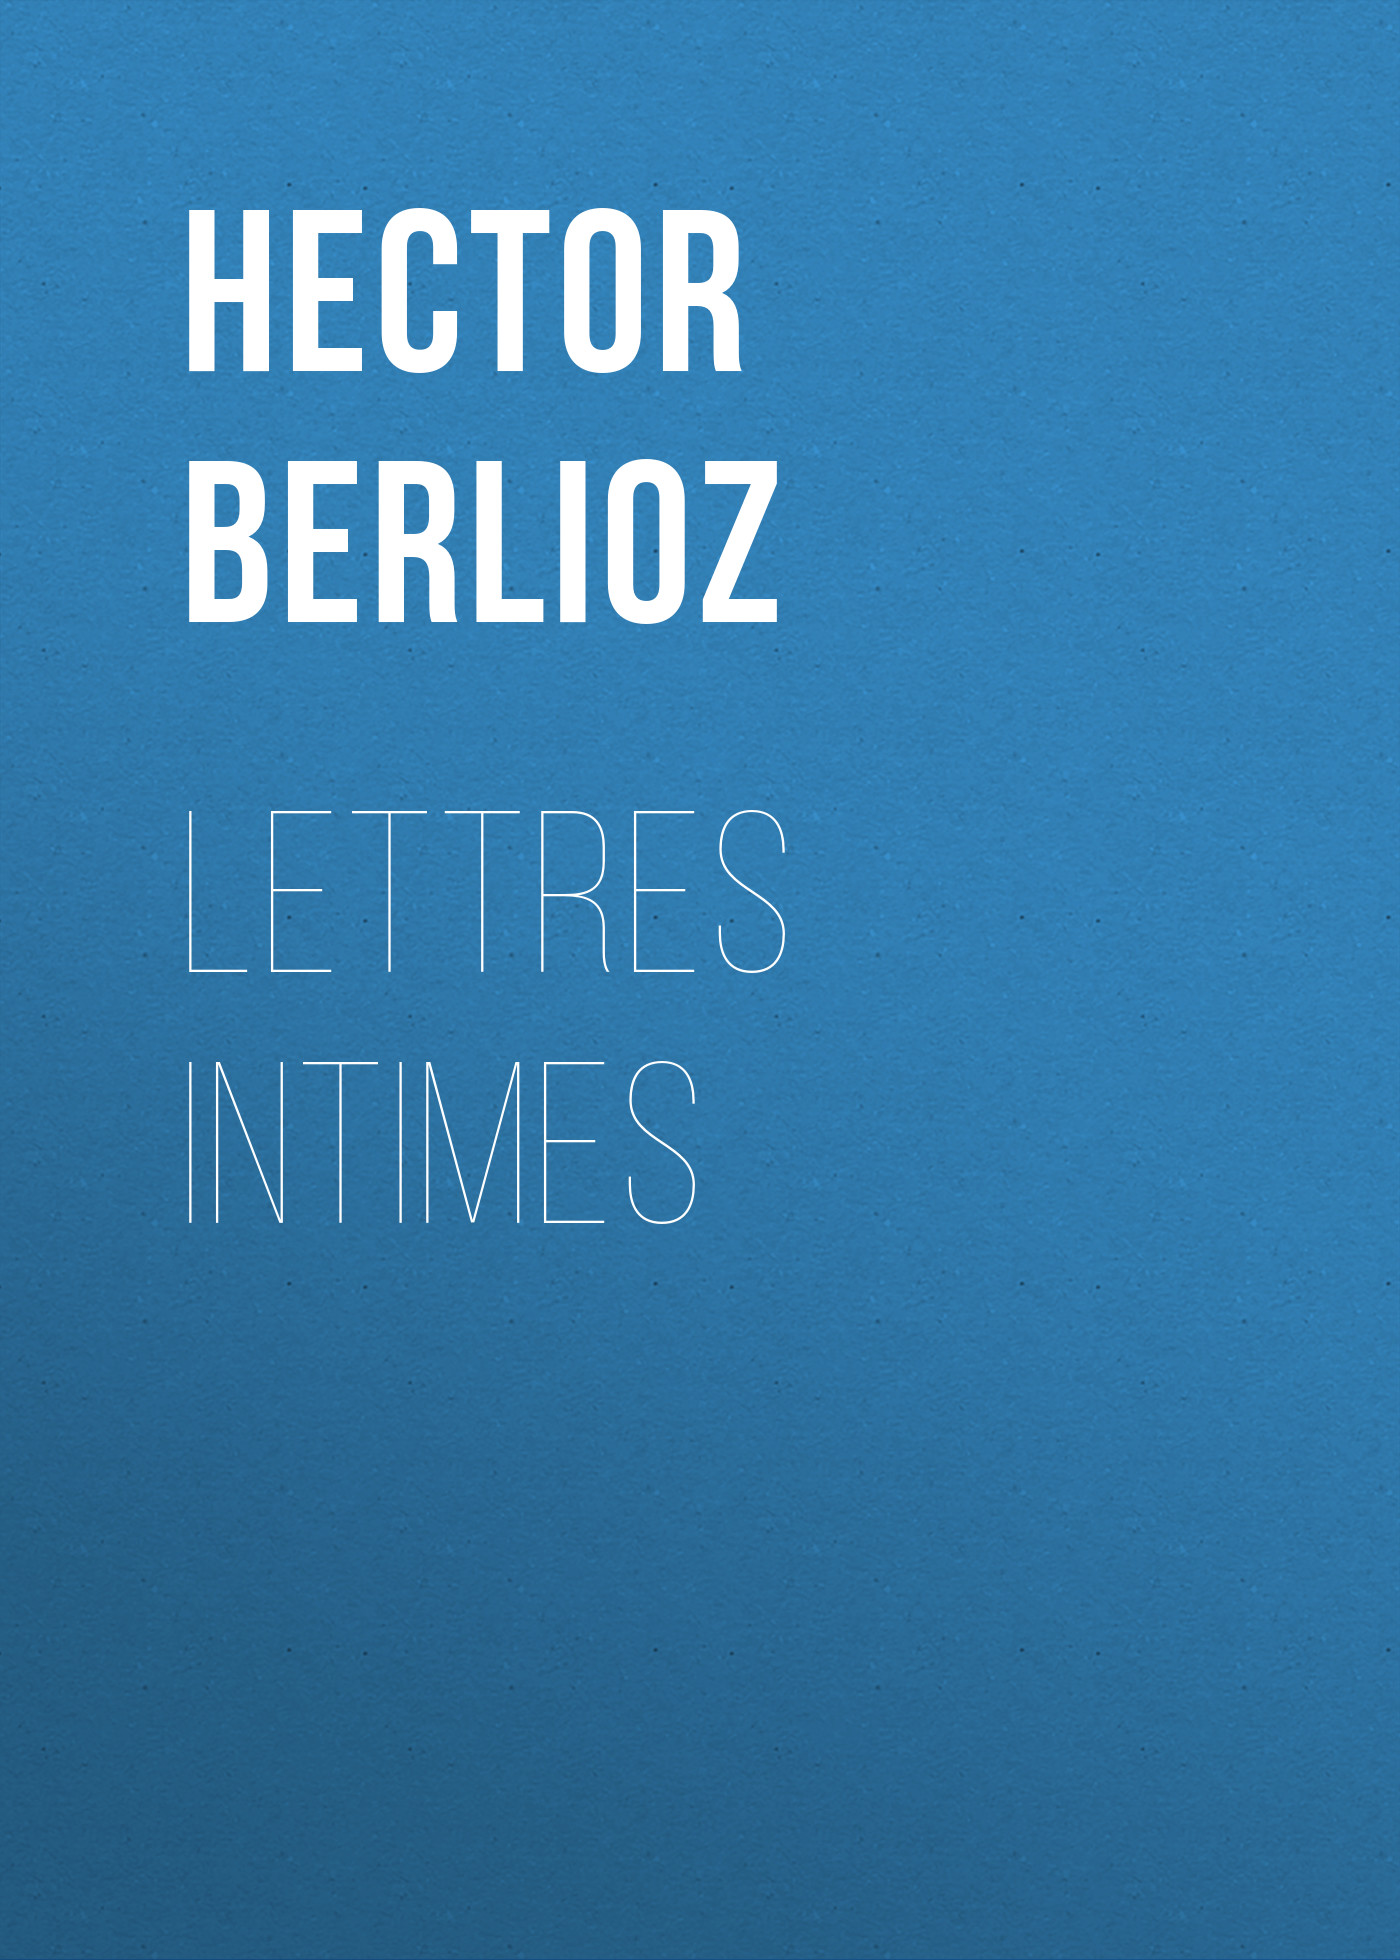 Книга Lettres intimes из серии , созданная Hector Berlioz, может относится к жанру Зарубежная старинная литература, Зарубежная классика. Стоимость электронной книги Lettres intimes с идентификатором 24173692 составляет 0 руб.